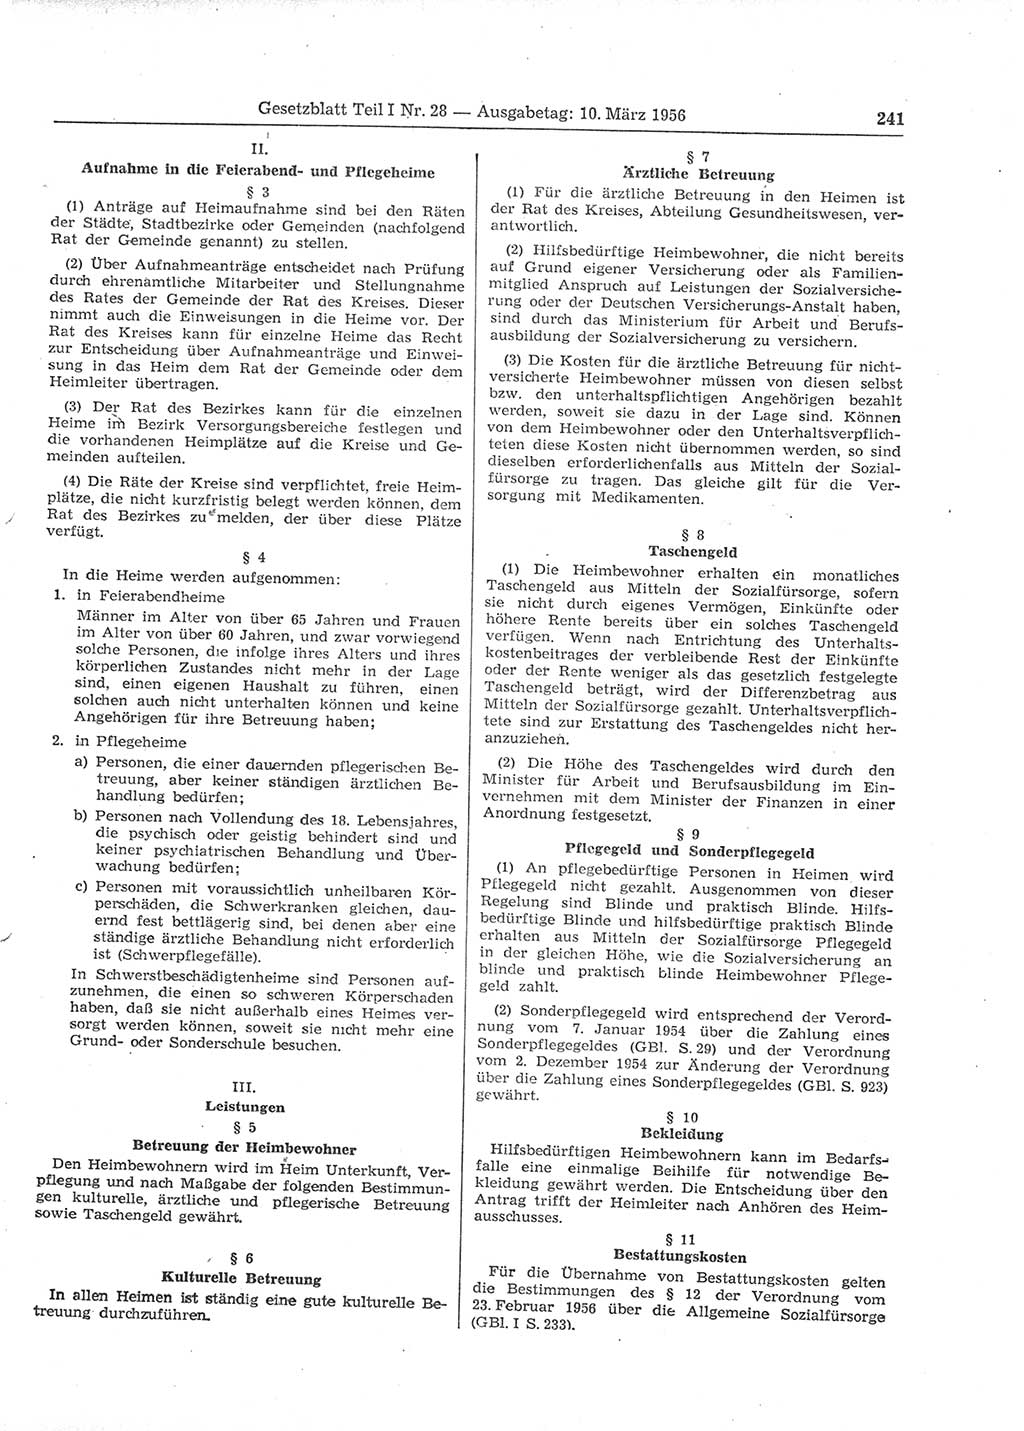 Gesetzblatt (GBl.) der Deutschen Demokratischen Republik (DDR) Teil Ⅰ 1956, Seite 241 (GBl. DDR Ⅰ 1956, S. 241)